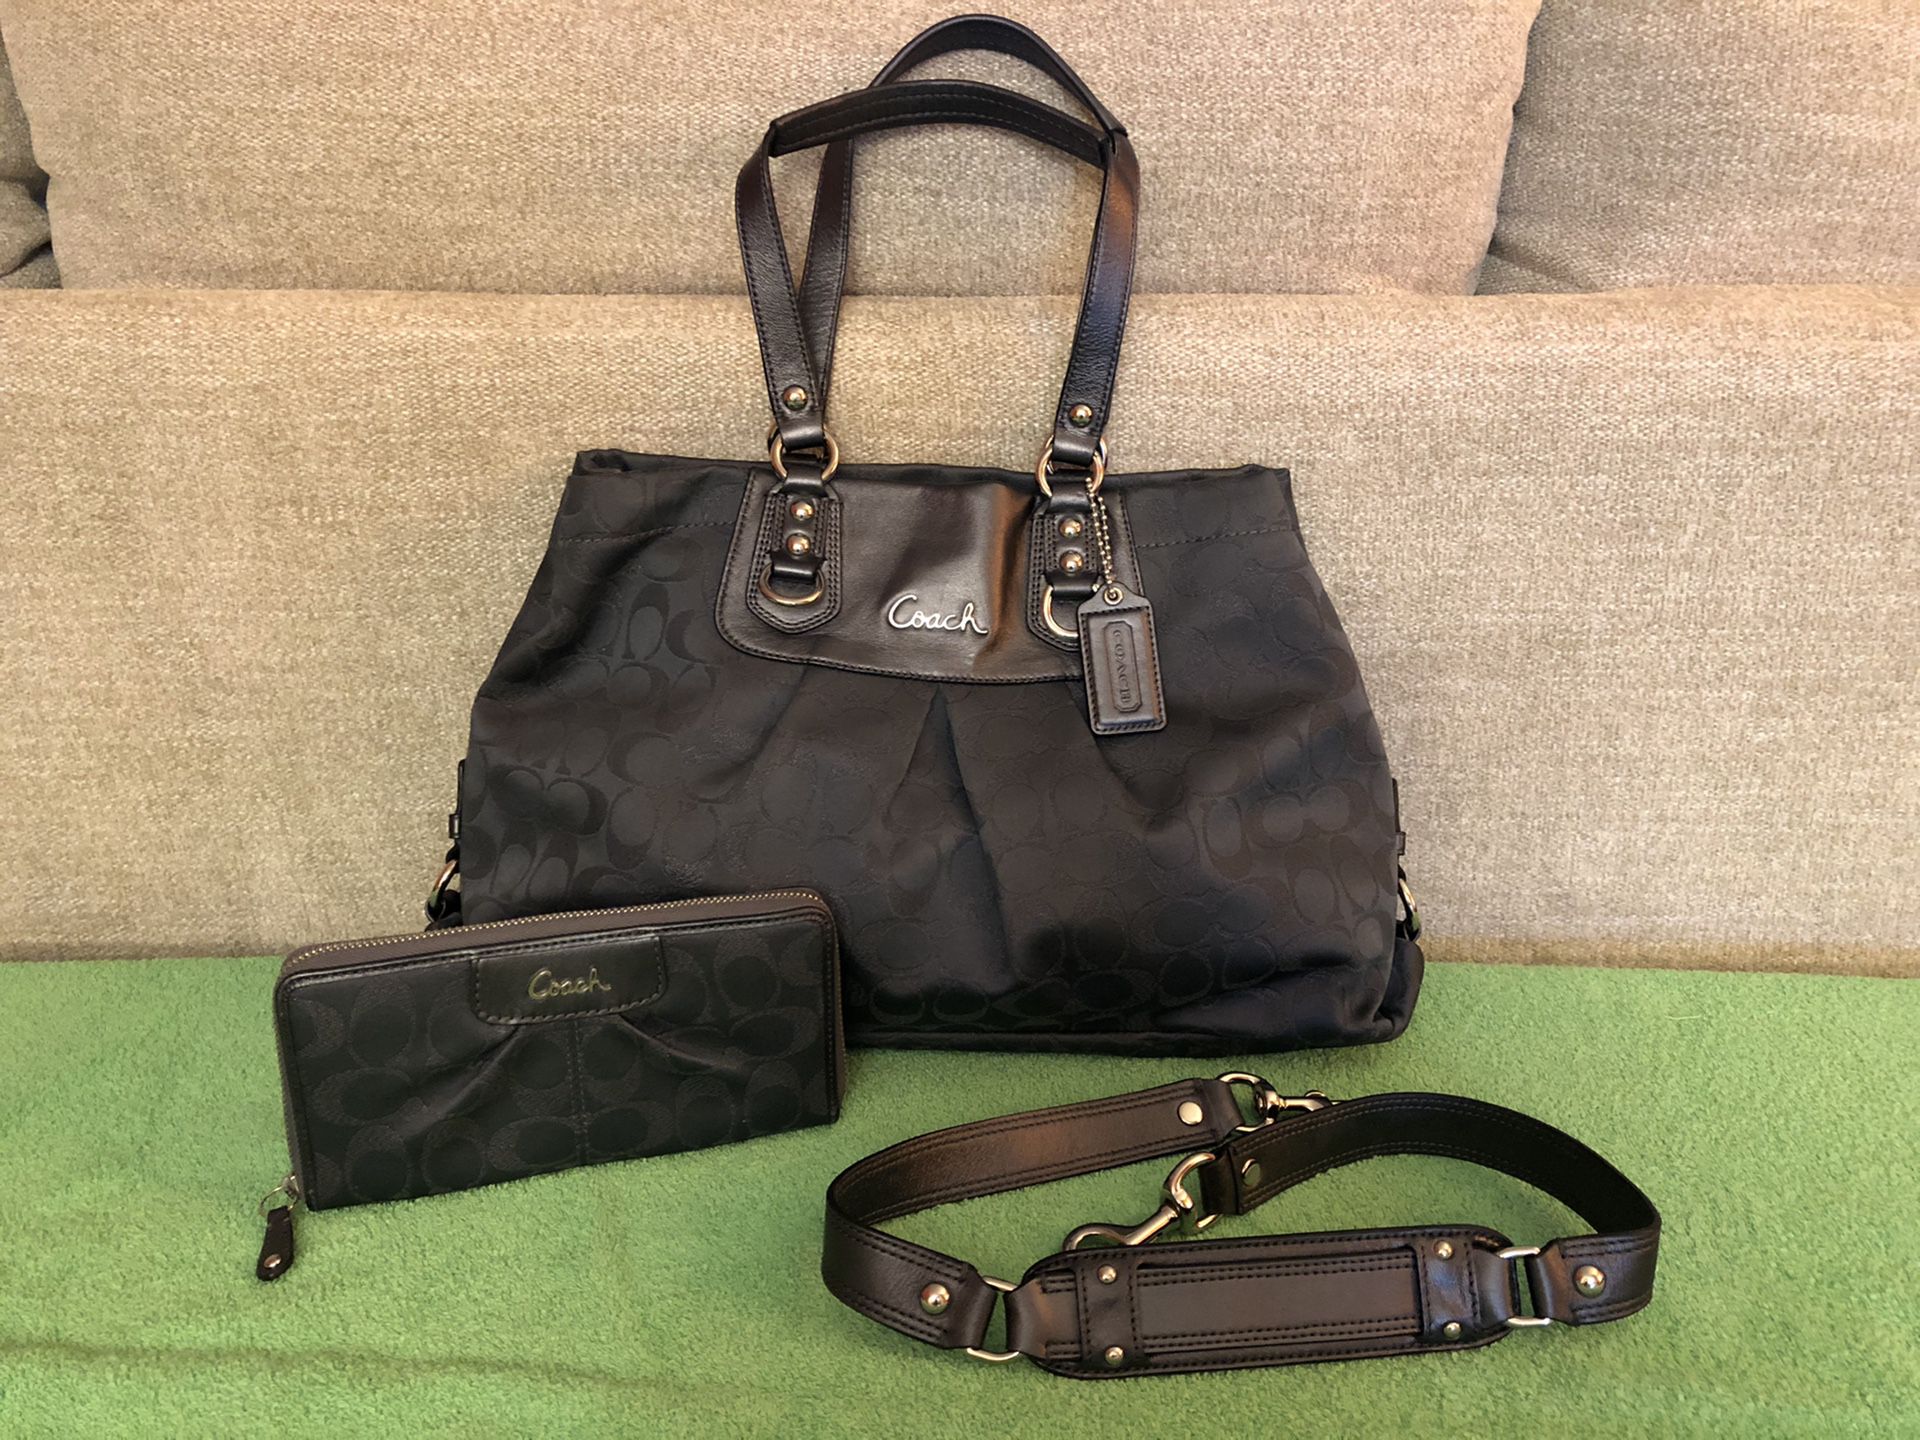 Coach gray handbag and matching wallet